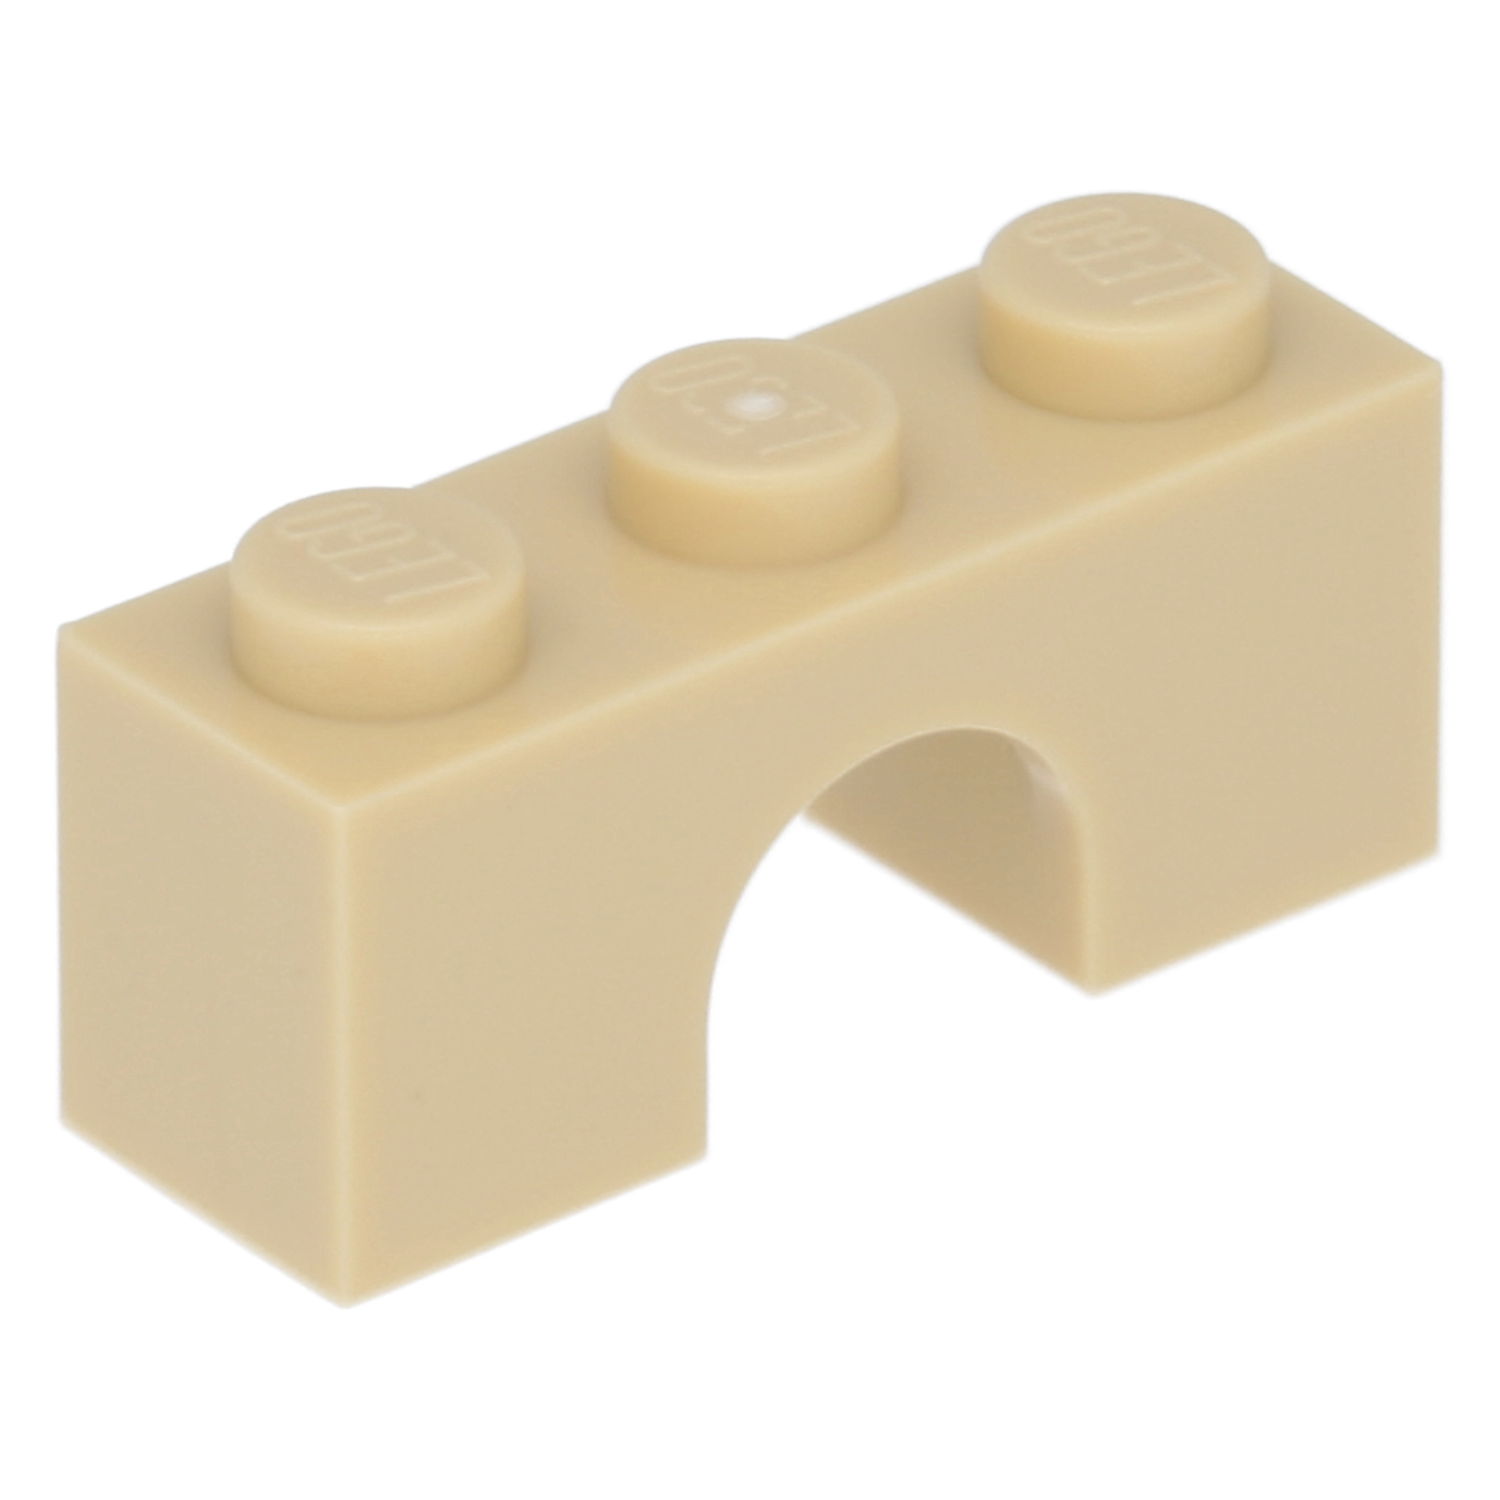 LEGO Bogensteine - 1 x 3